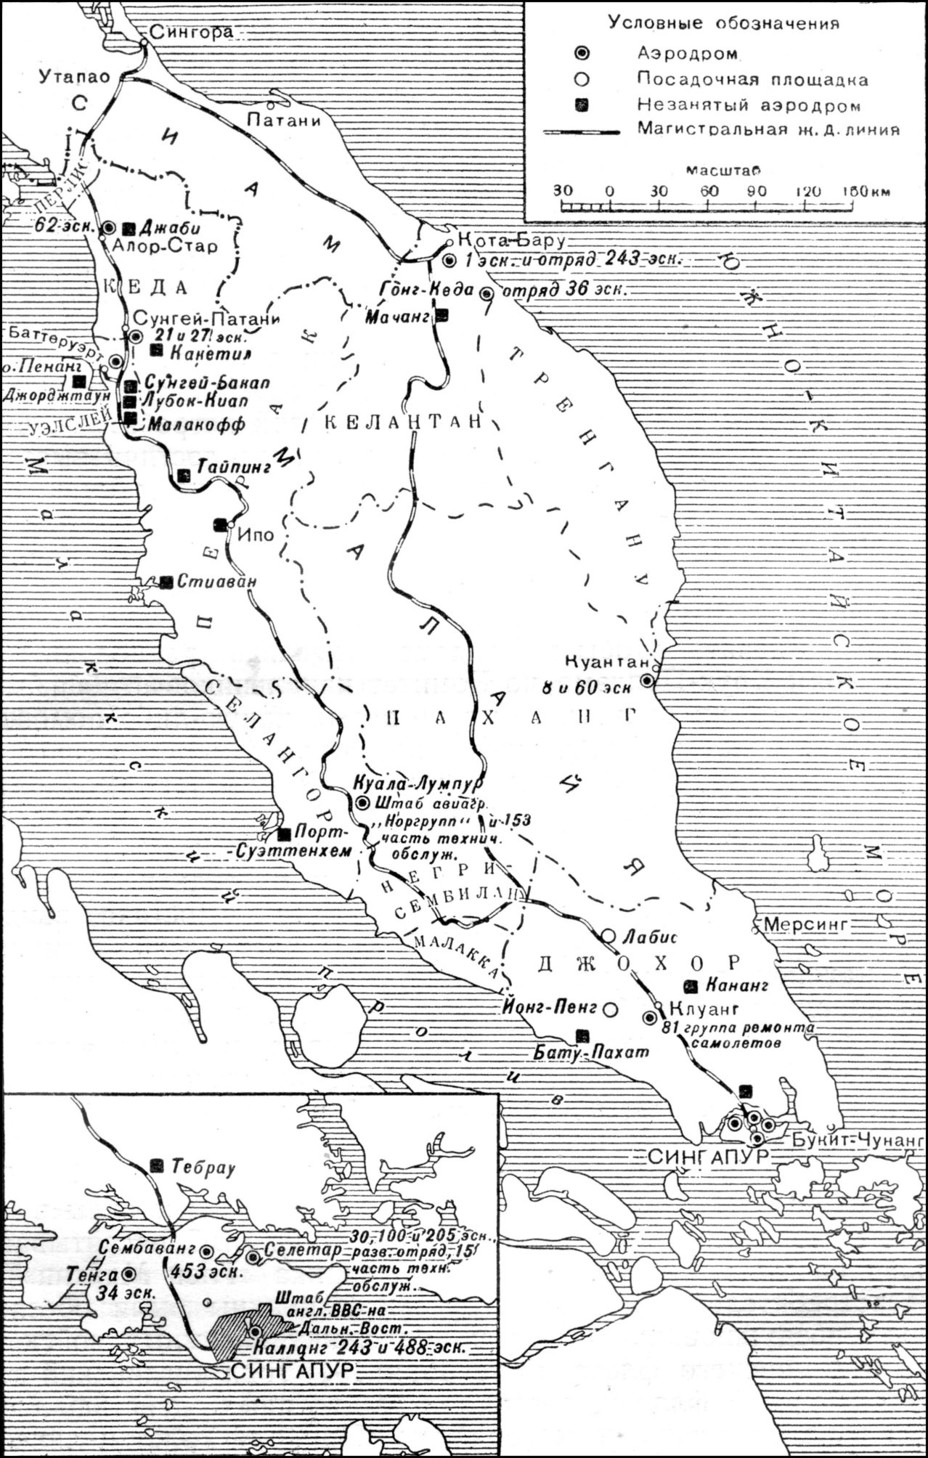 ​Аэродромная сеть Малайи и размещение британских ВВС на 8 декабря 1941 года Д. Ричардс, Х. Сондерс. Военно-воздушные силы Великобритании во Второй мировой войне - Несбывшийся «Матадор» | Warspot.ru